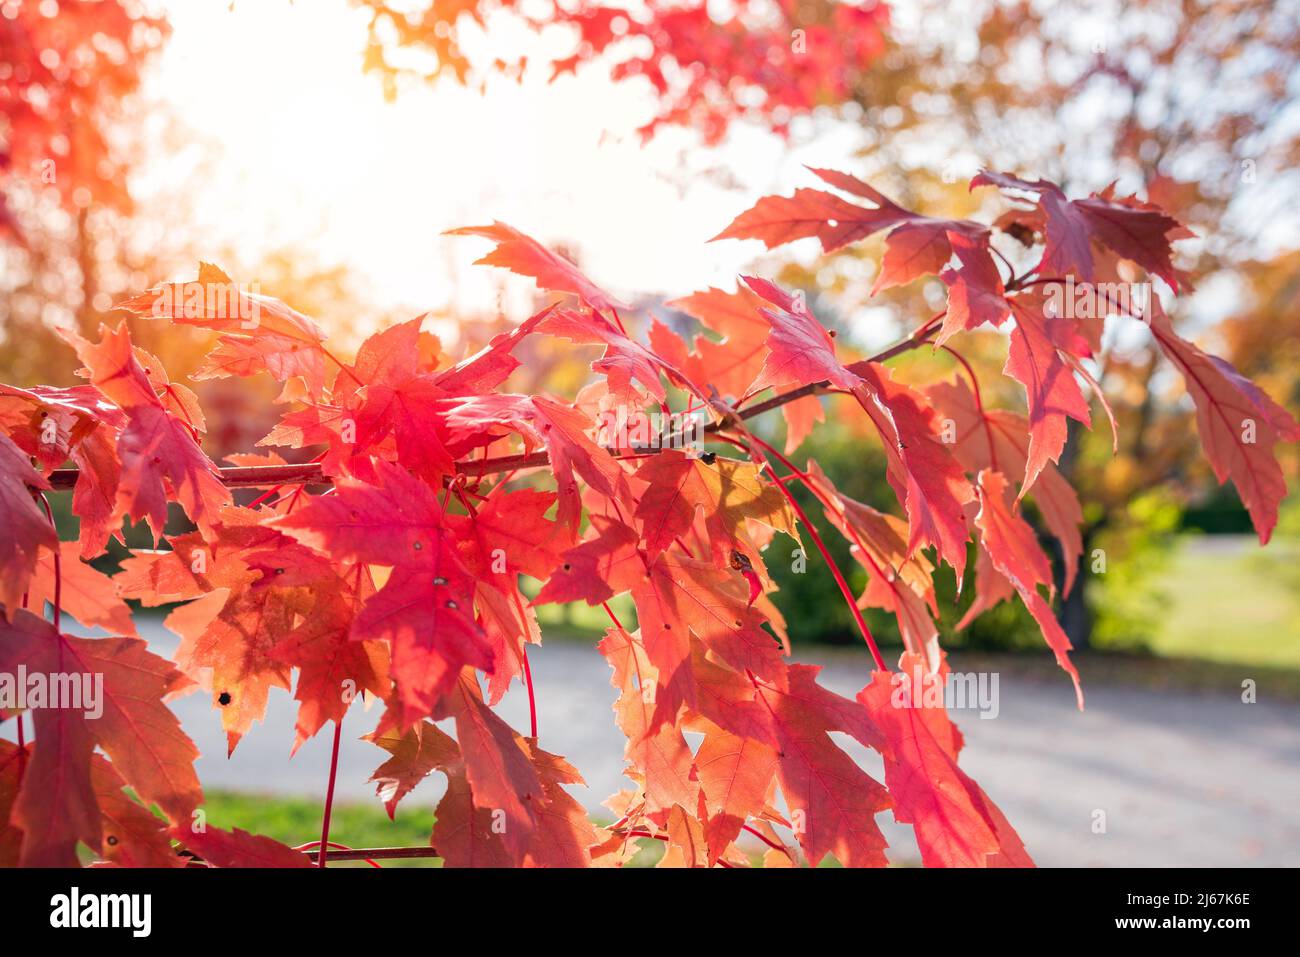 Nahaufnahme eines Ahornbaums mit roten Blättern im herbstlichen Abendlicht. Natürlicher Hintergrund. Stockfoto